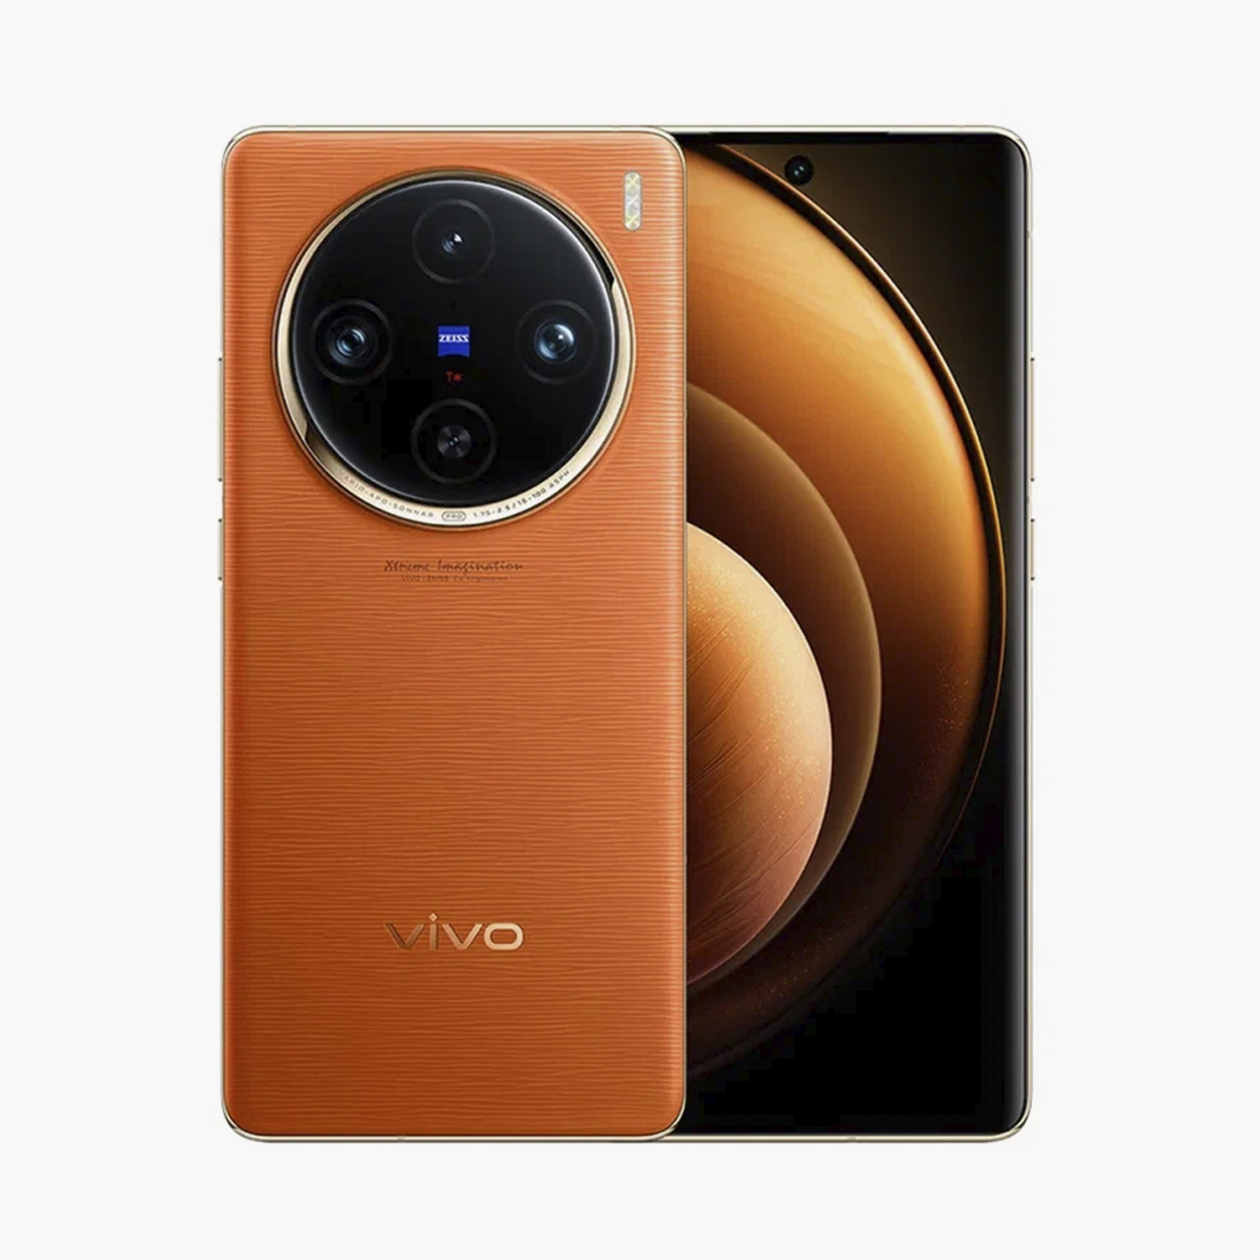 Vivo X100 Pro по стоимости и характеристикам максимально близок к Honor Magic 6 Pro. У него сравнимый аккумулятор и такой же набор камер, но зум более мощный